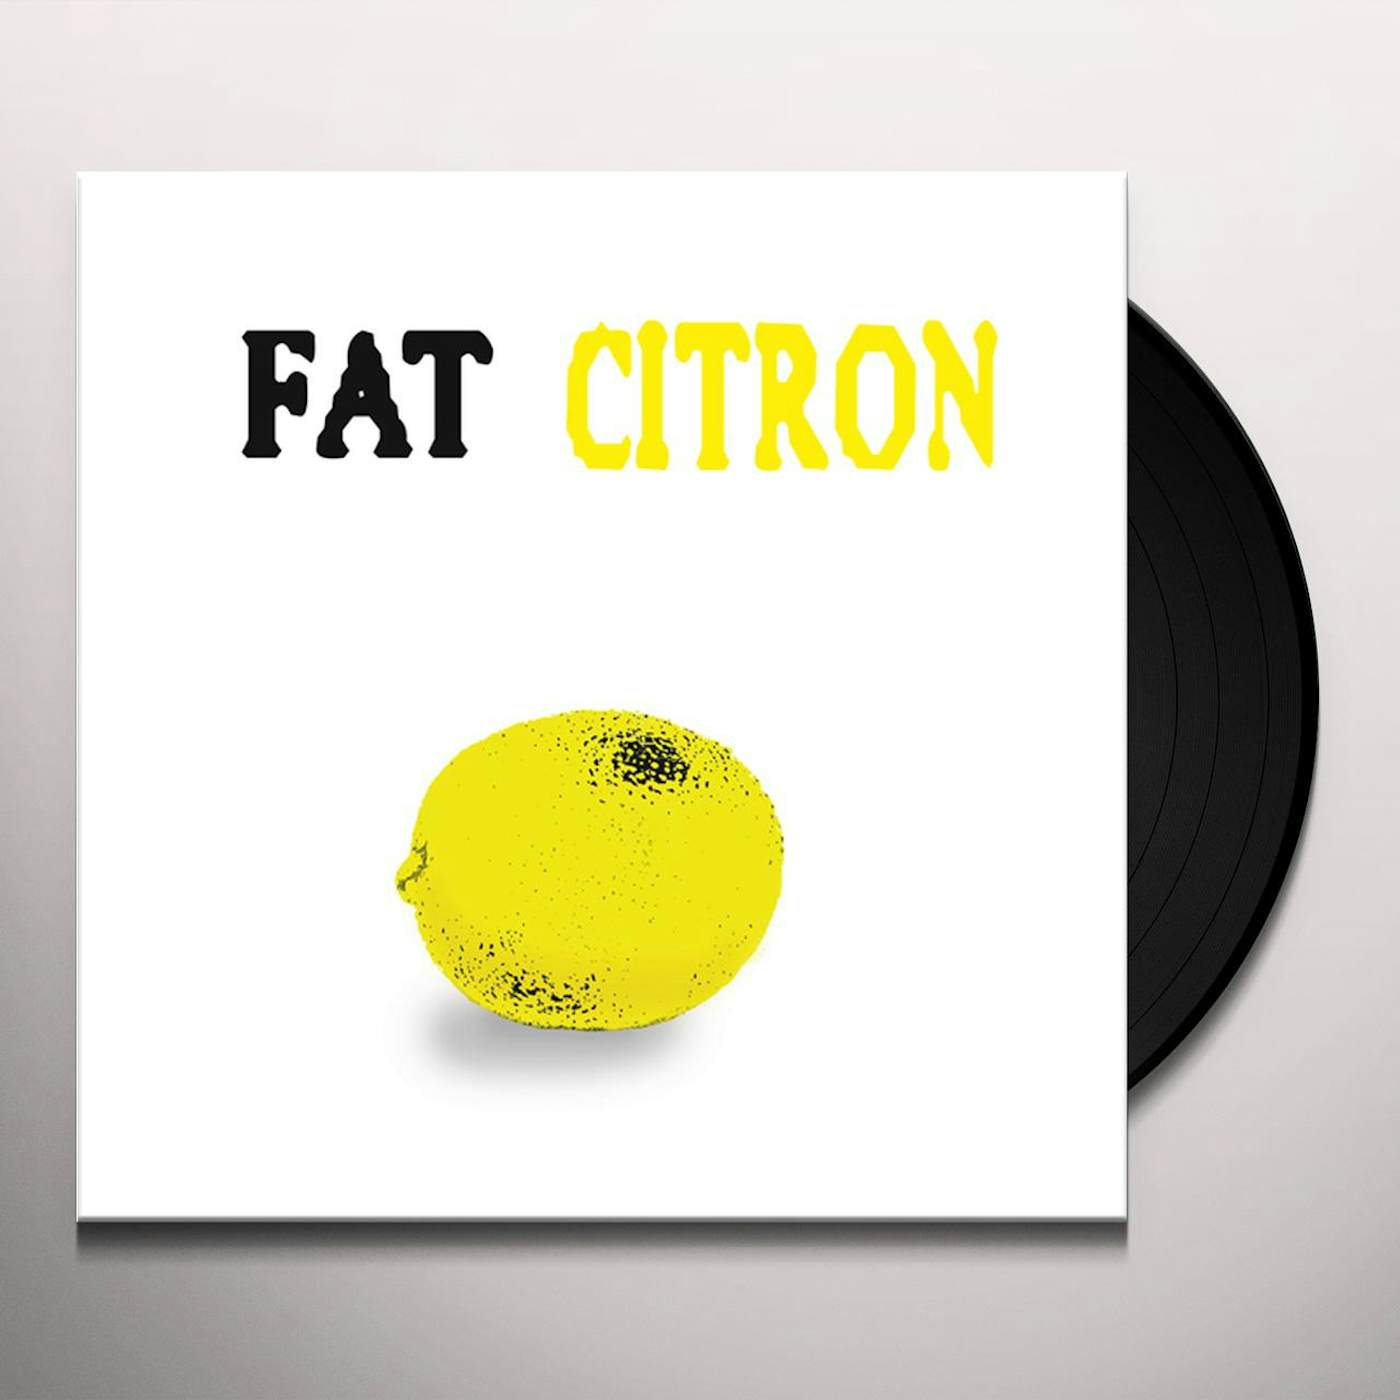 Fat Citron Vinyl Record